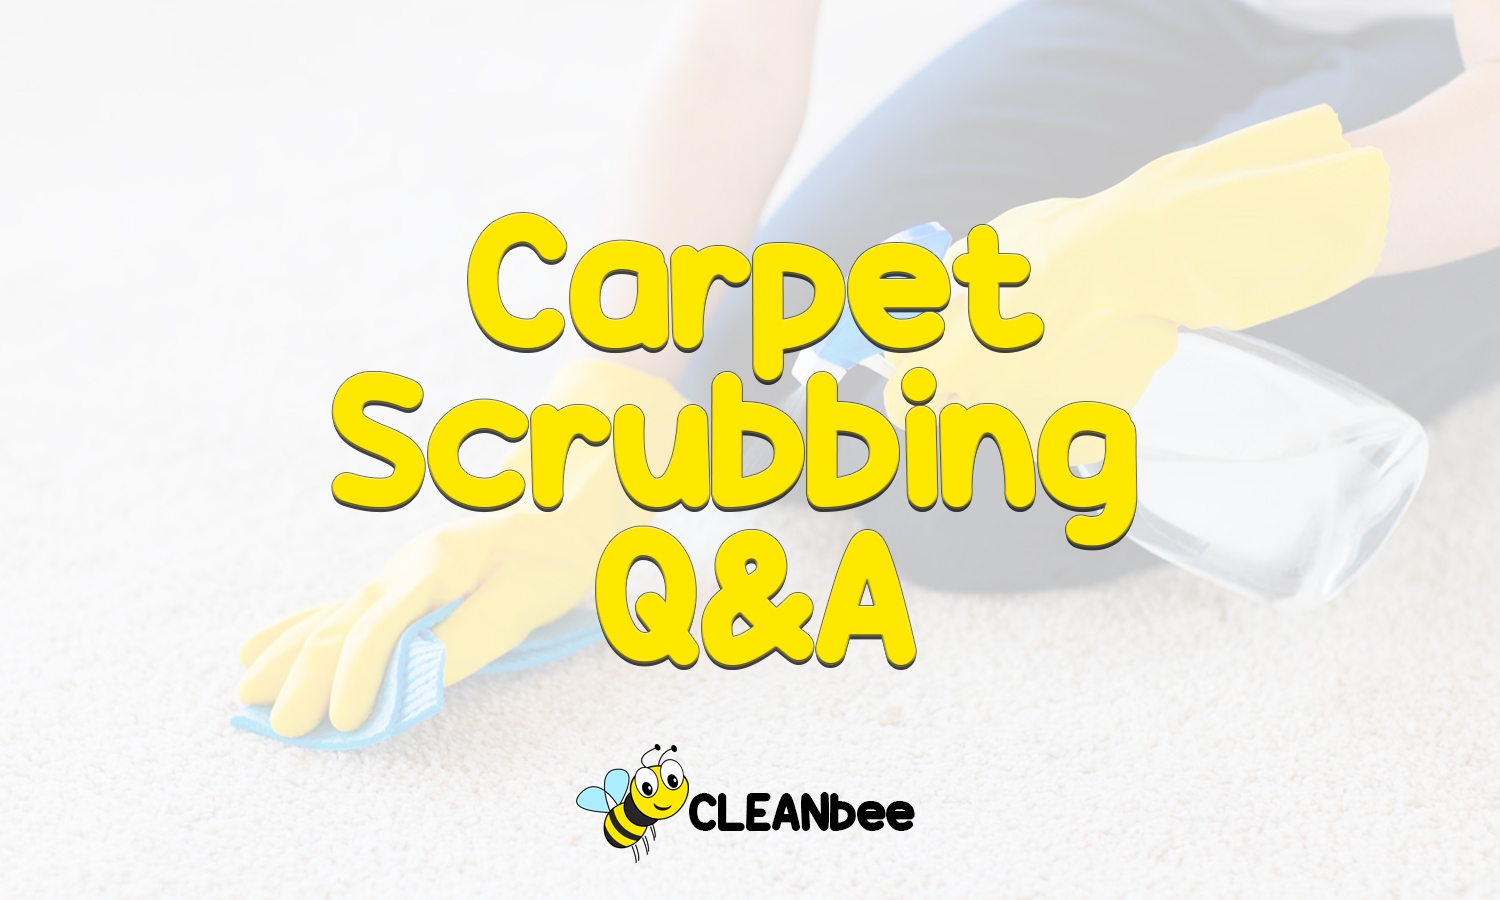 Carpet Scrubbing Q&A